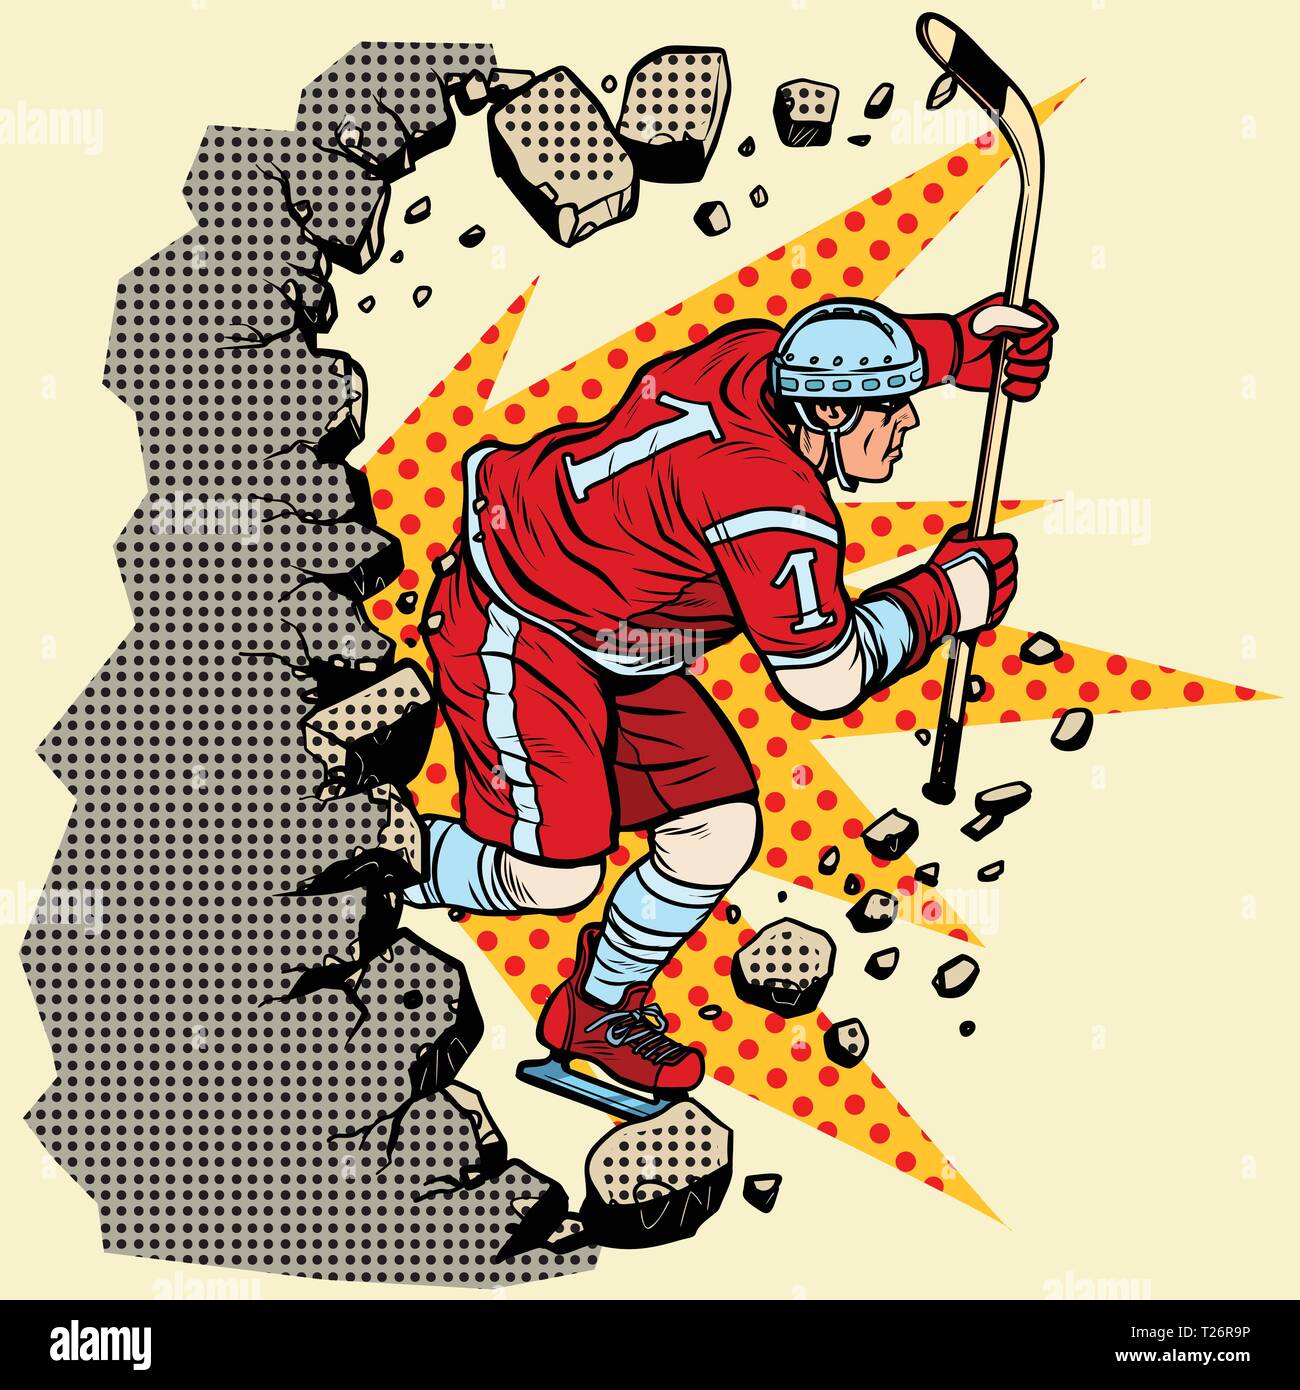 Hockey Player bricht eine Mauer, Winter Sport. Vorwärts bewegen, persönliche Entwicklung. Pop Art retro Vektor illustration Vintage kitsch Stock Vektor